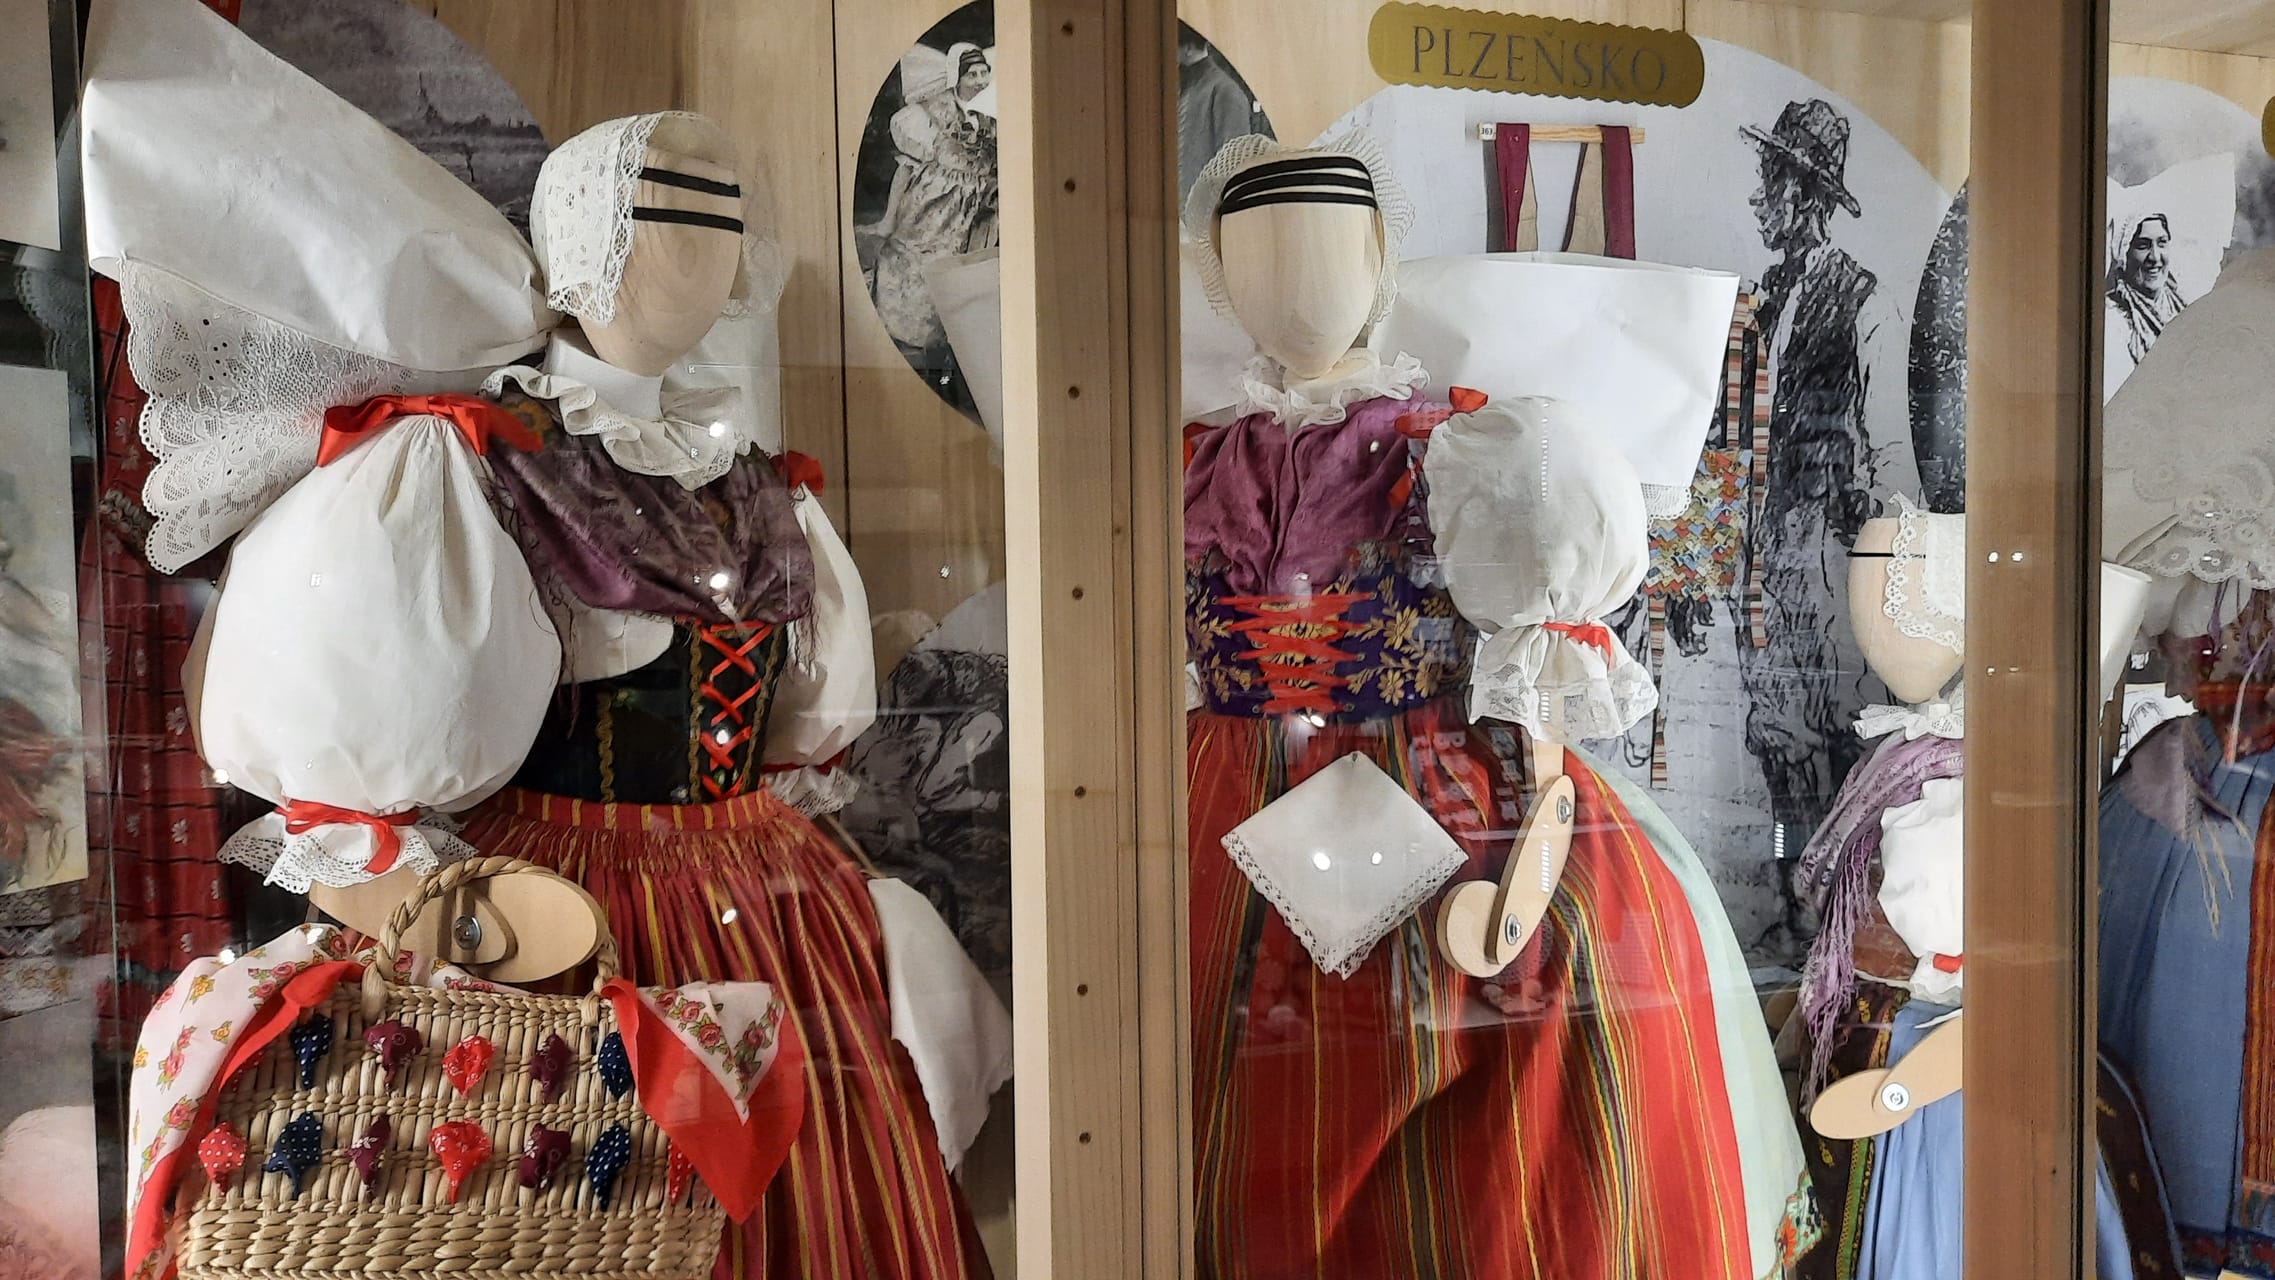 Vestimenta muisca preservada en museos